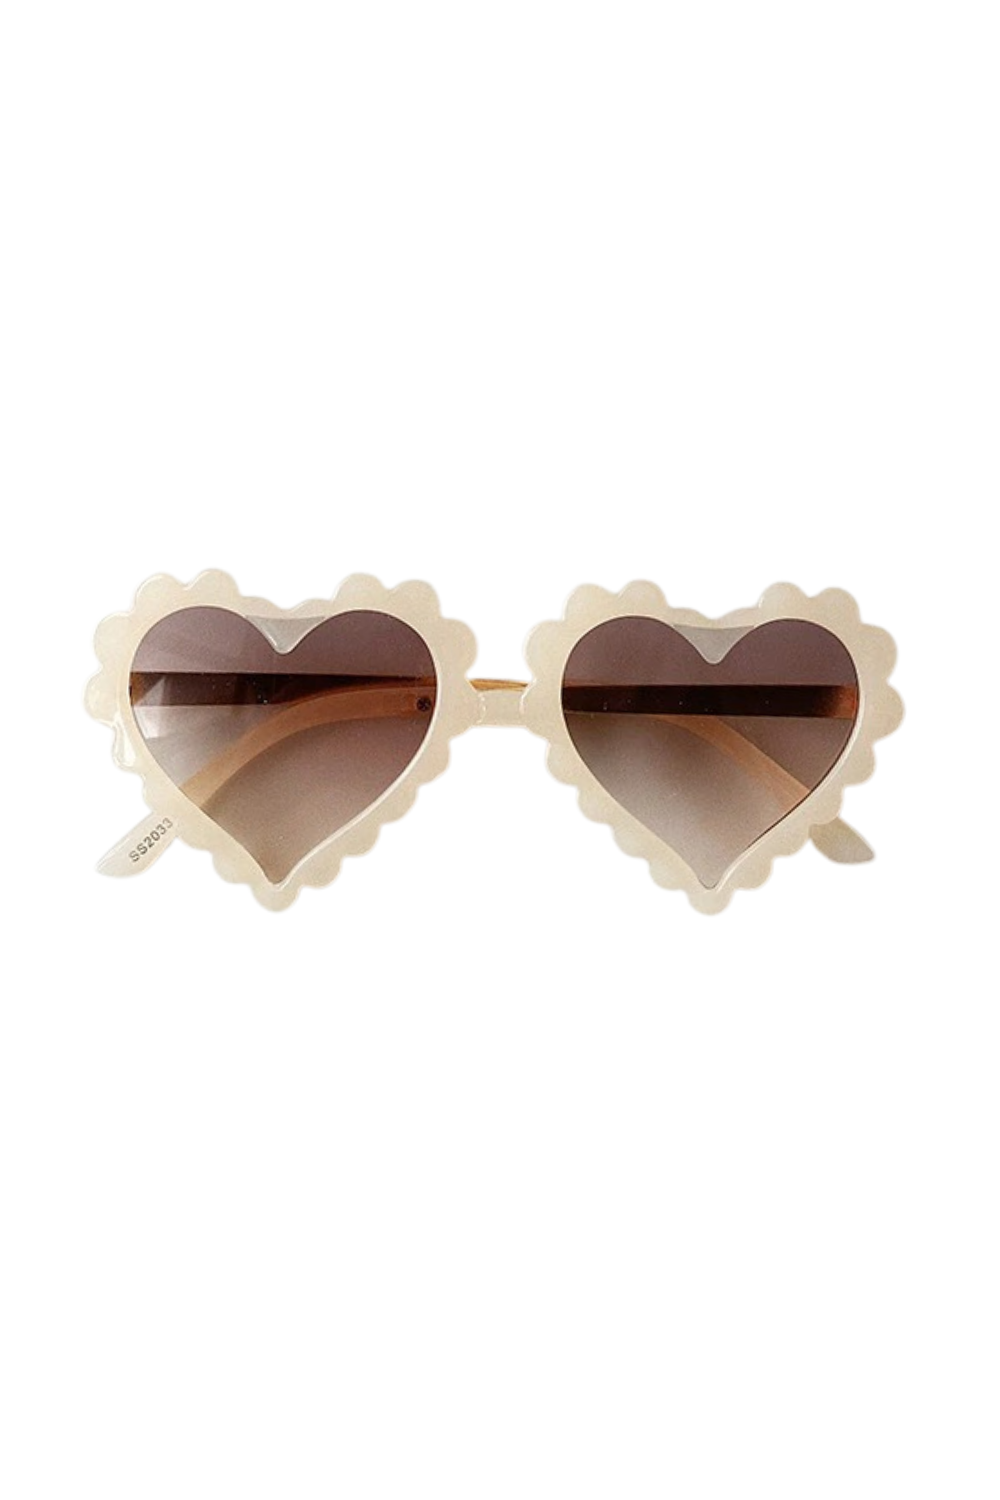 white heart baby sunglasses